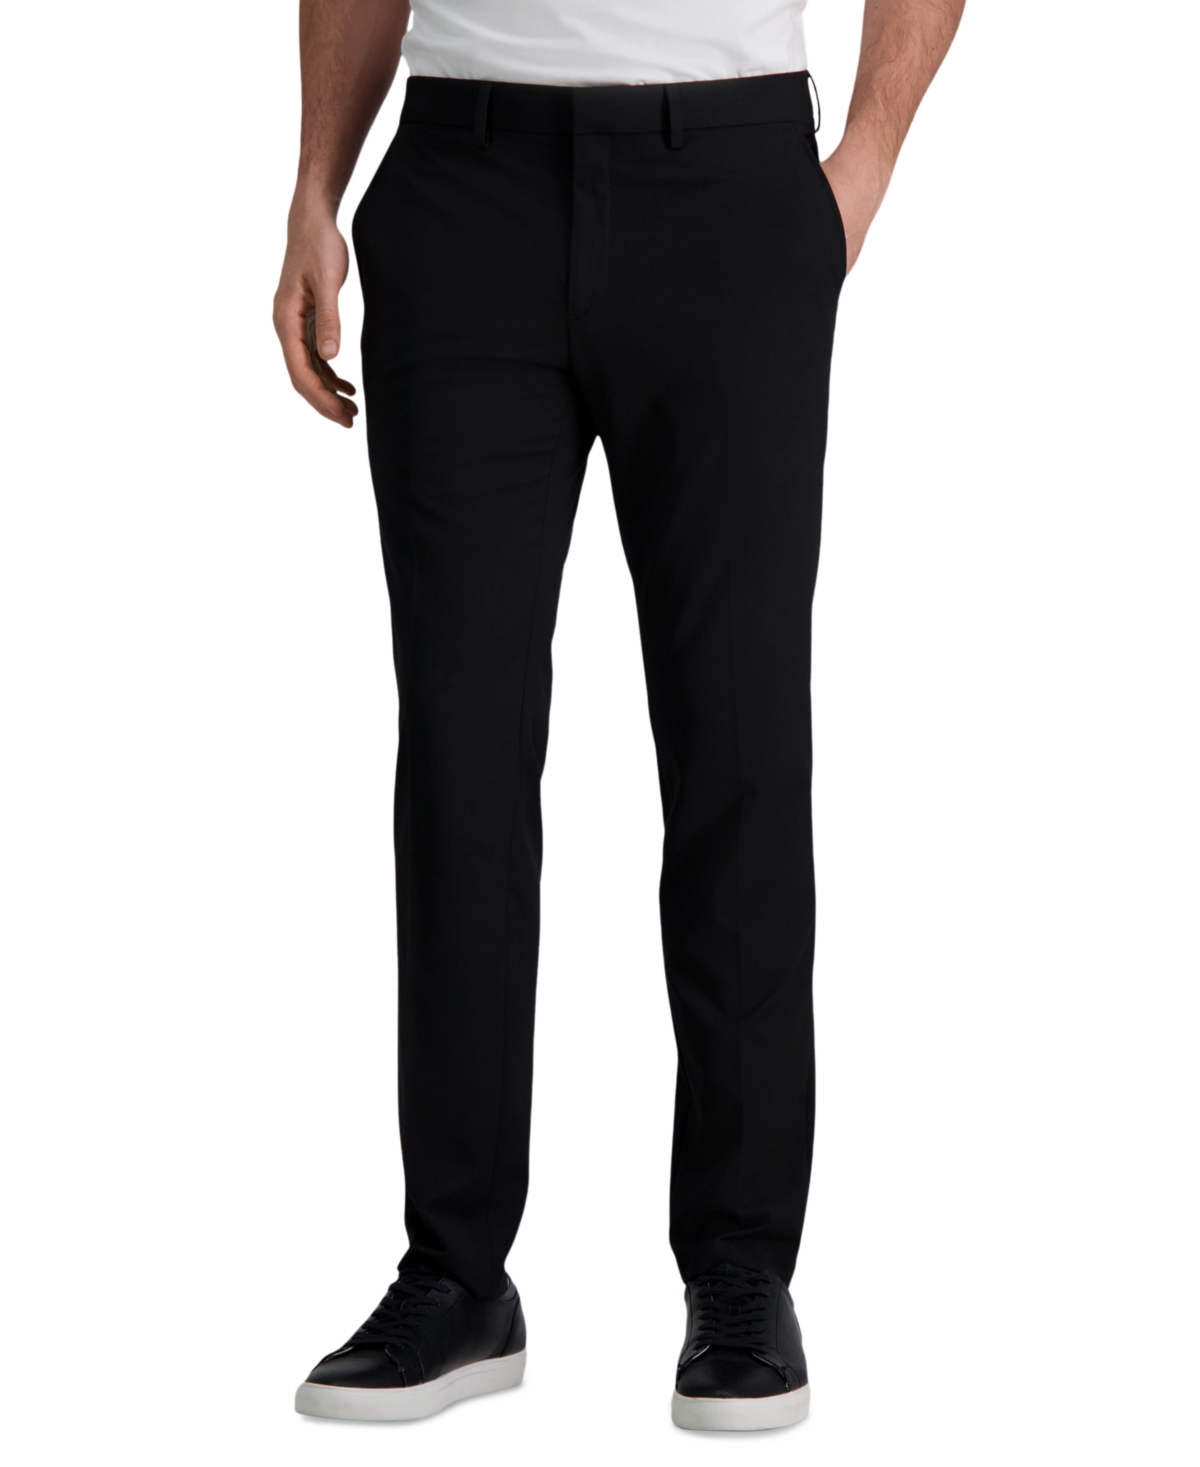 J.m. Haggar Men's 4 Way Stretch Slim Fit Flat Front Suit Pant - Black